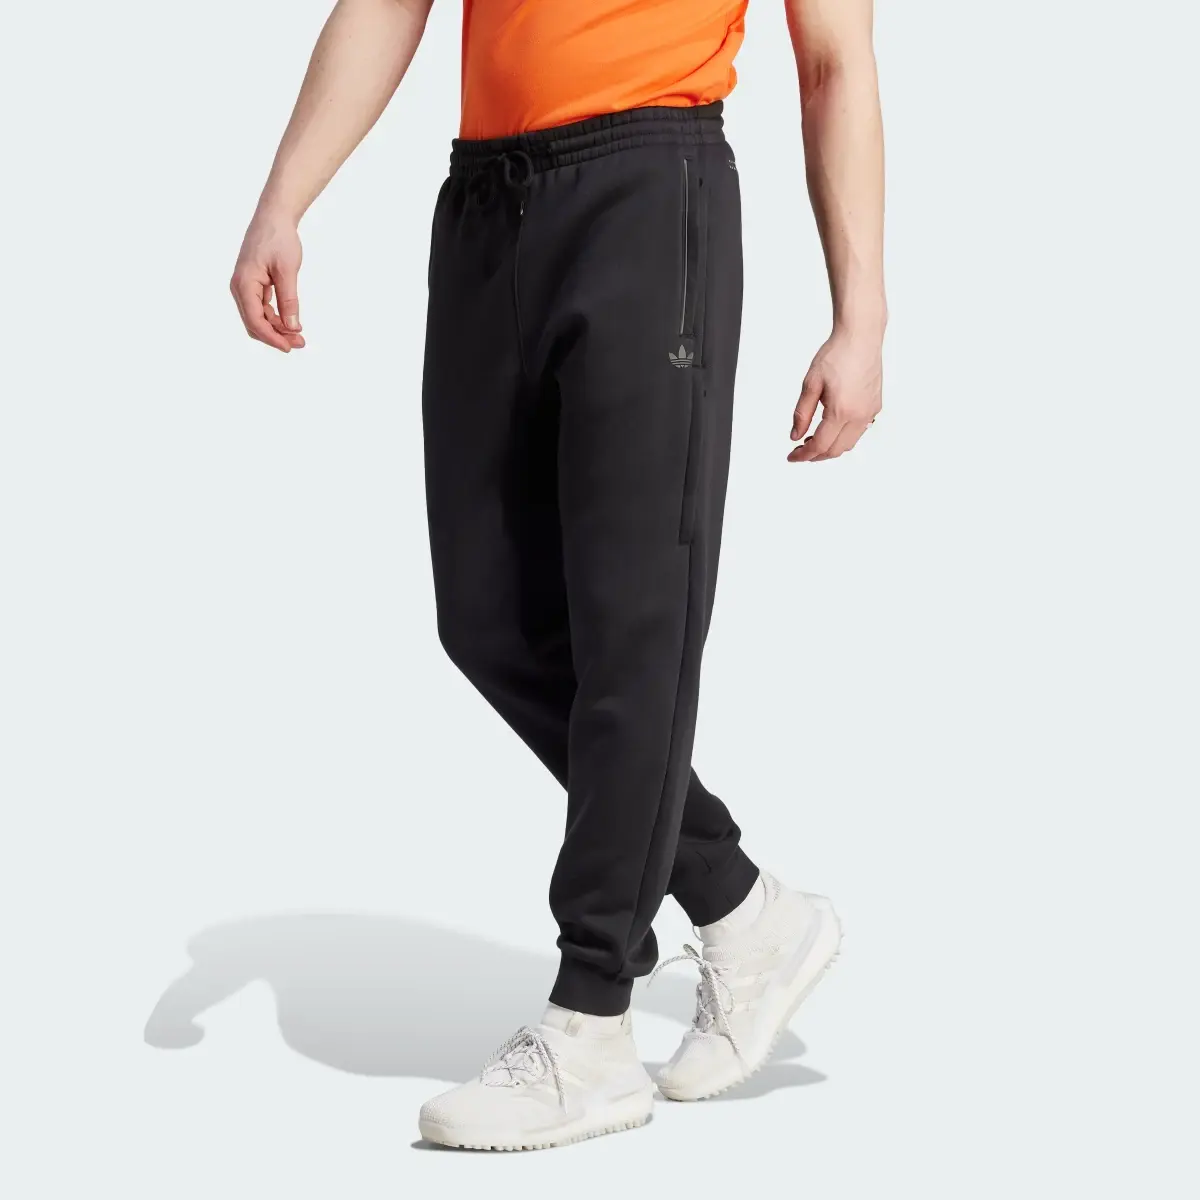 Adidas Spodnie dresowe Adicolor Seasonal Reflective. 1